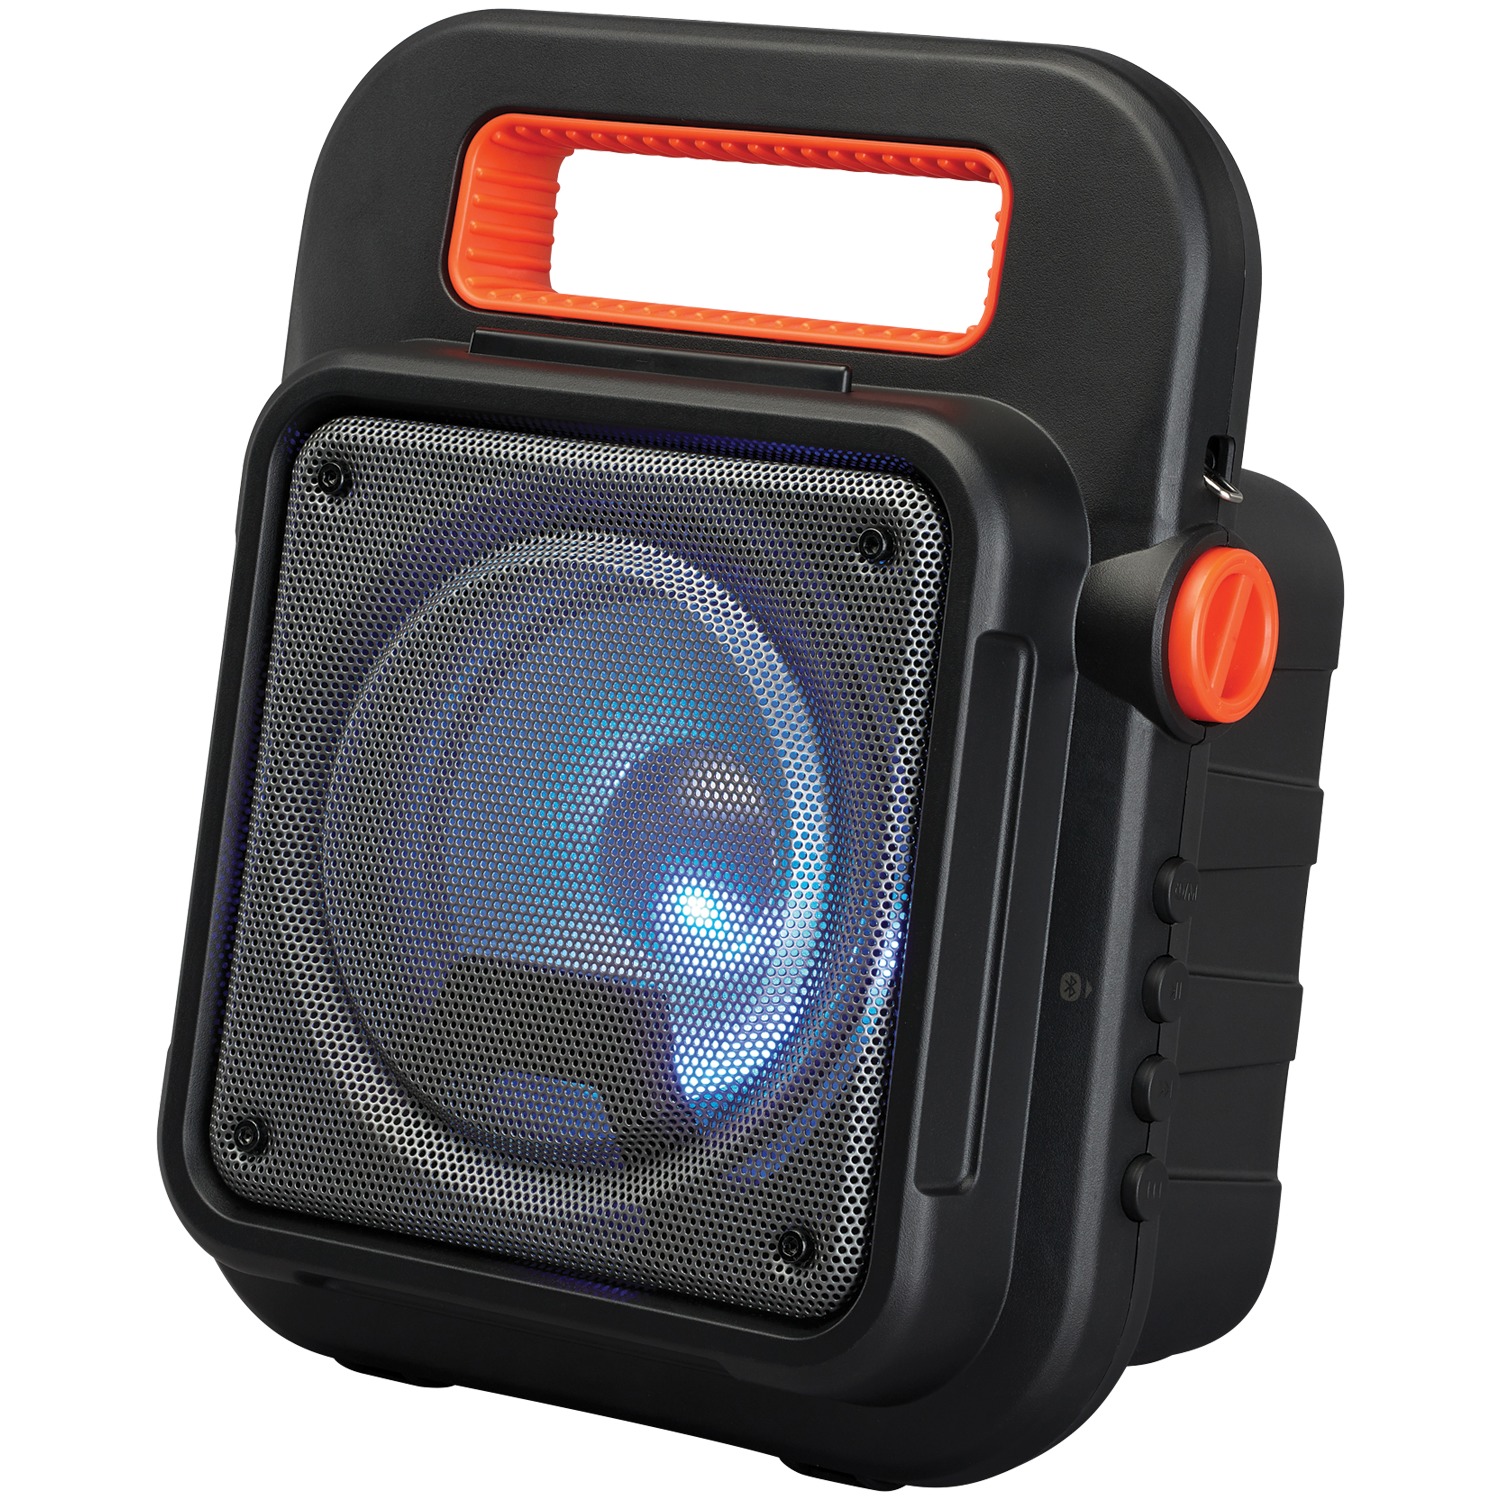 iLive Portable Bluetooth Speaker, Black, ISB309B - image 1 of 5